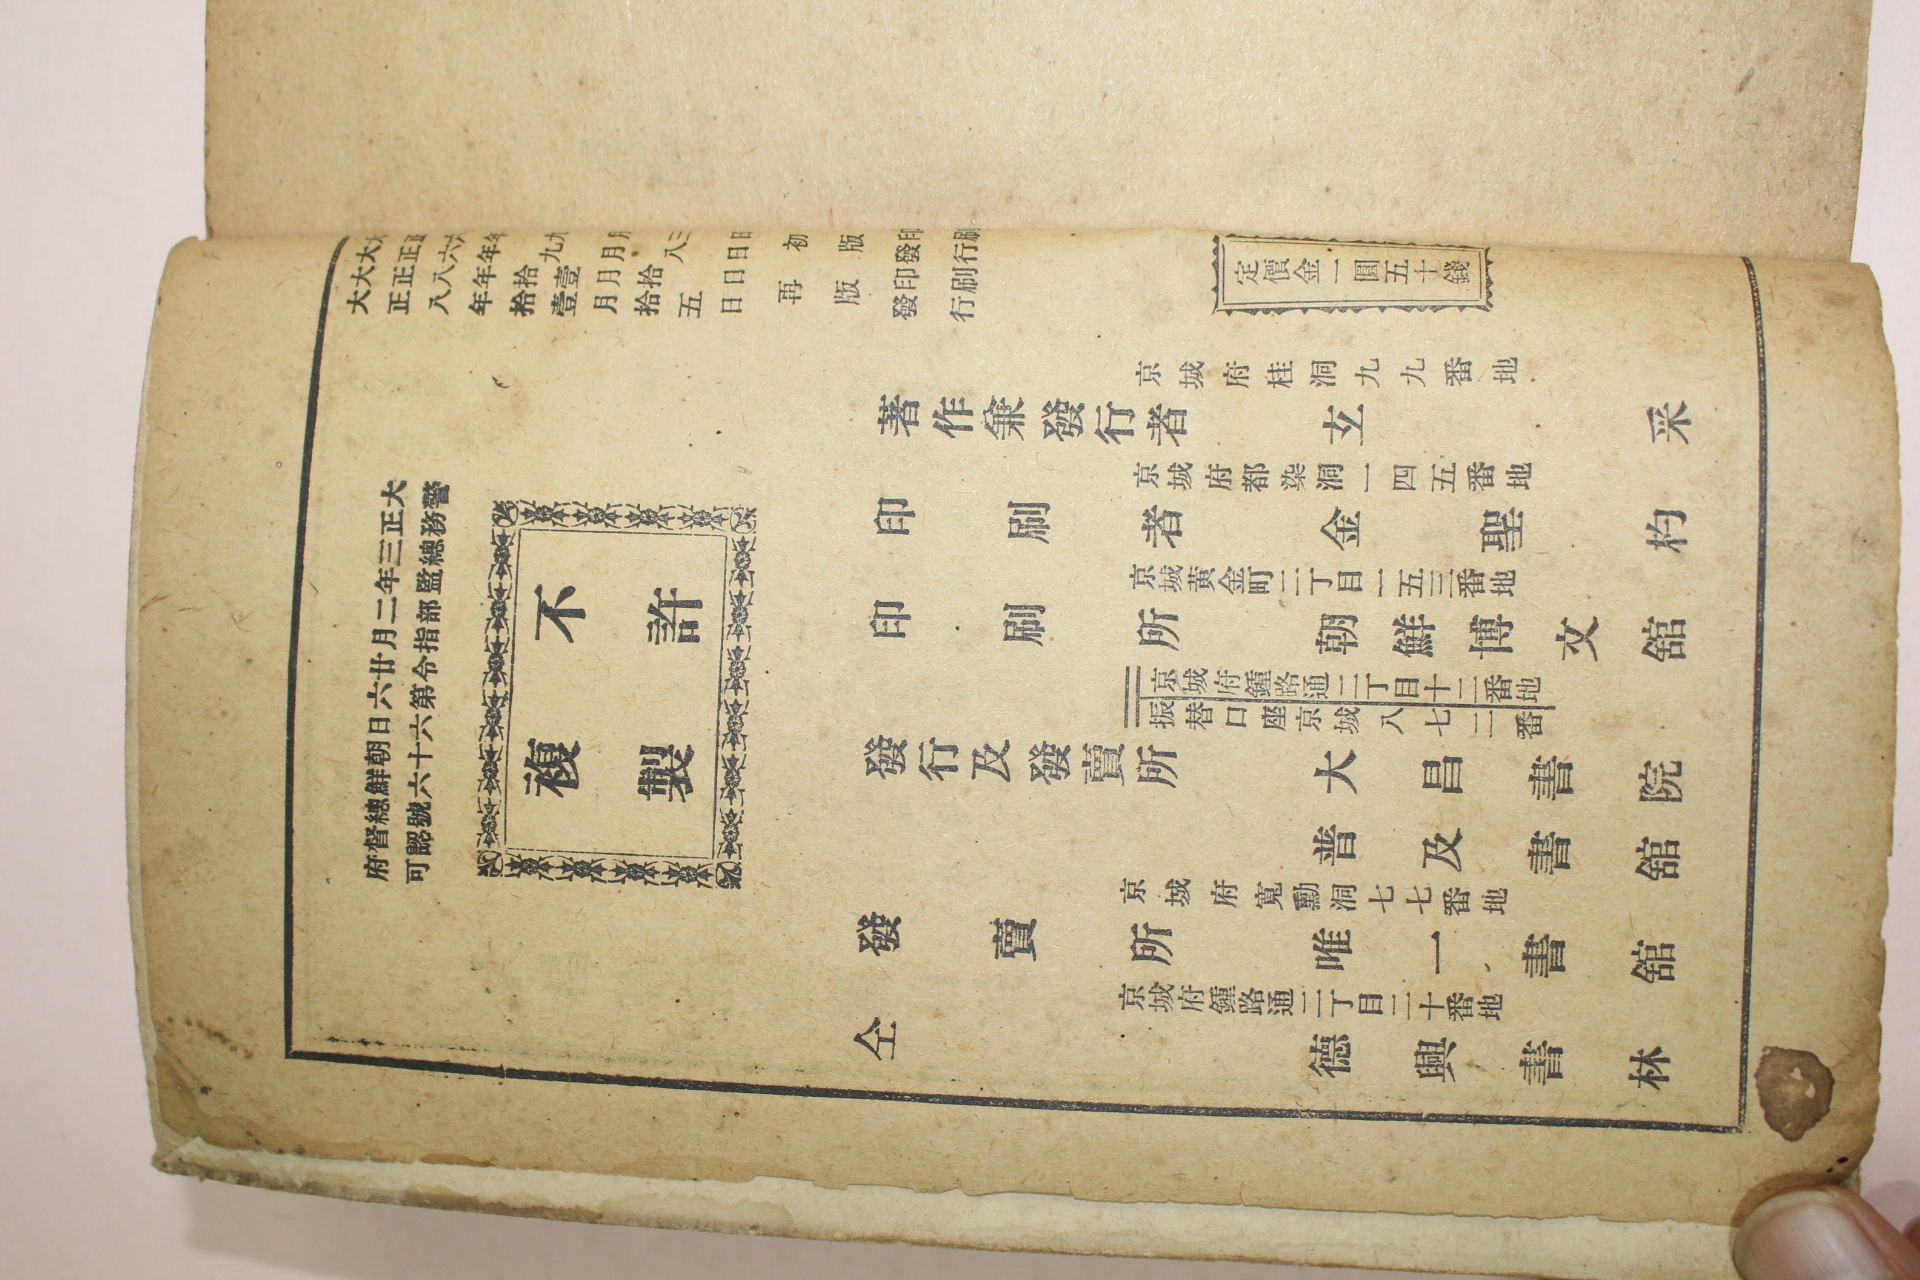 1919년 경성덕흥서림 척독대성(尺牘大成) 1책완질